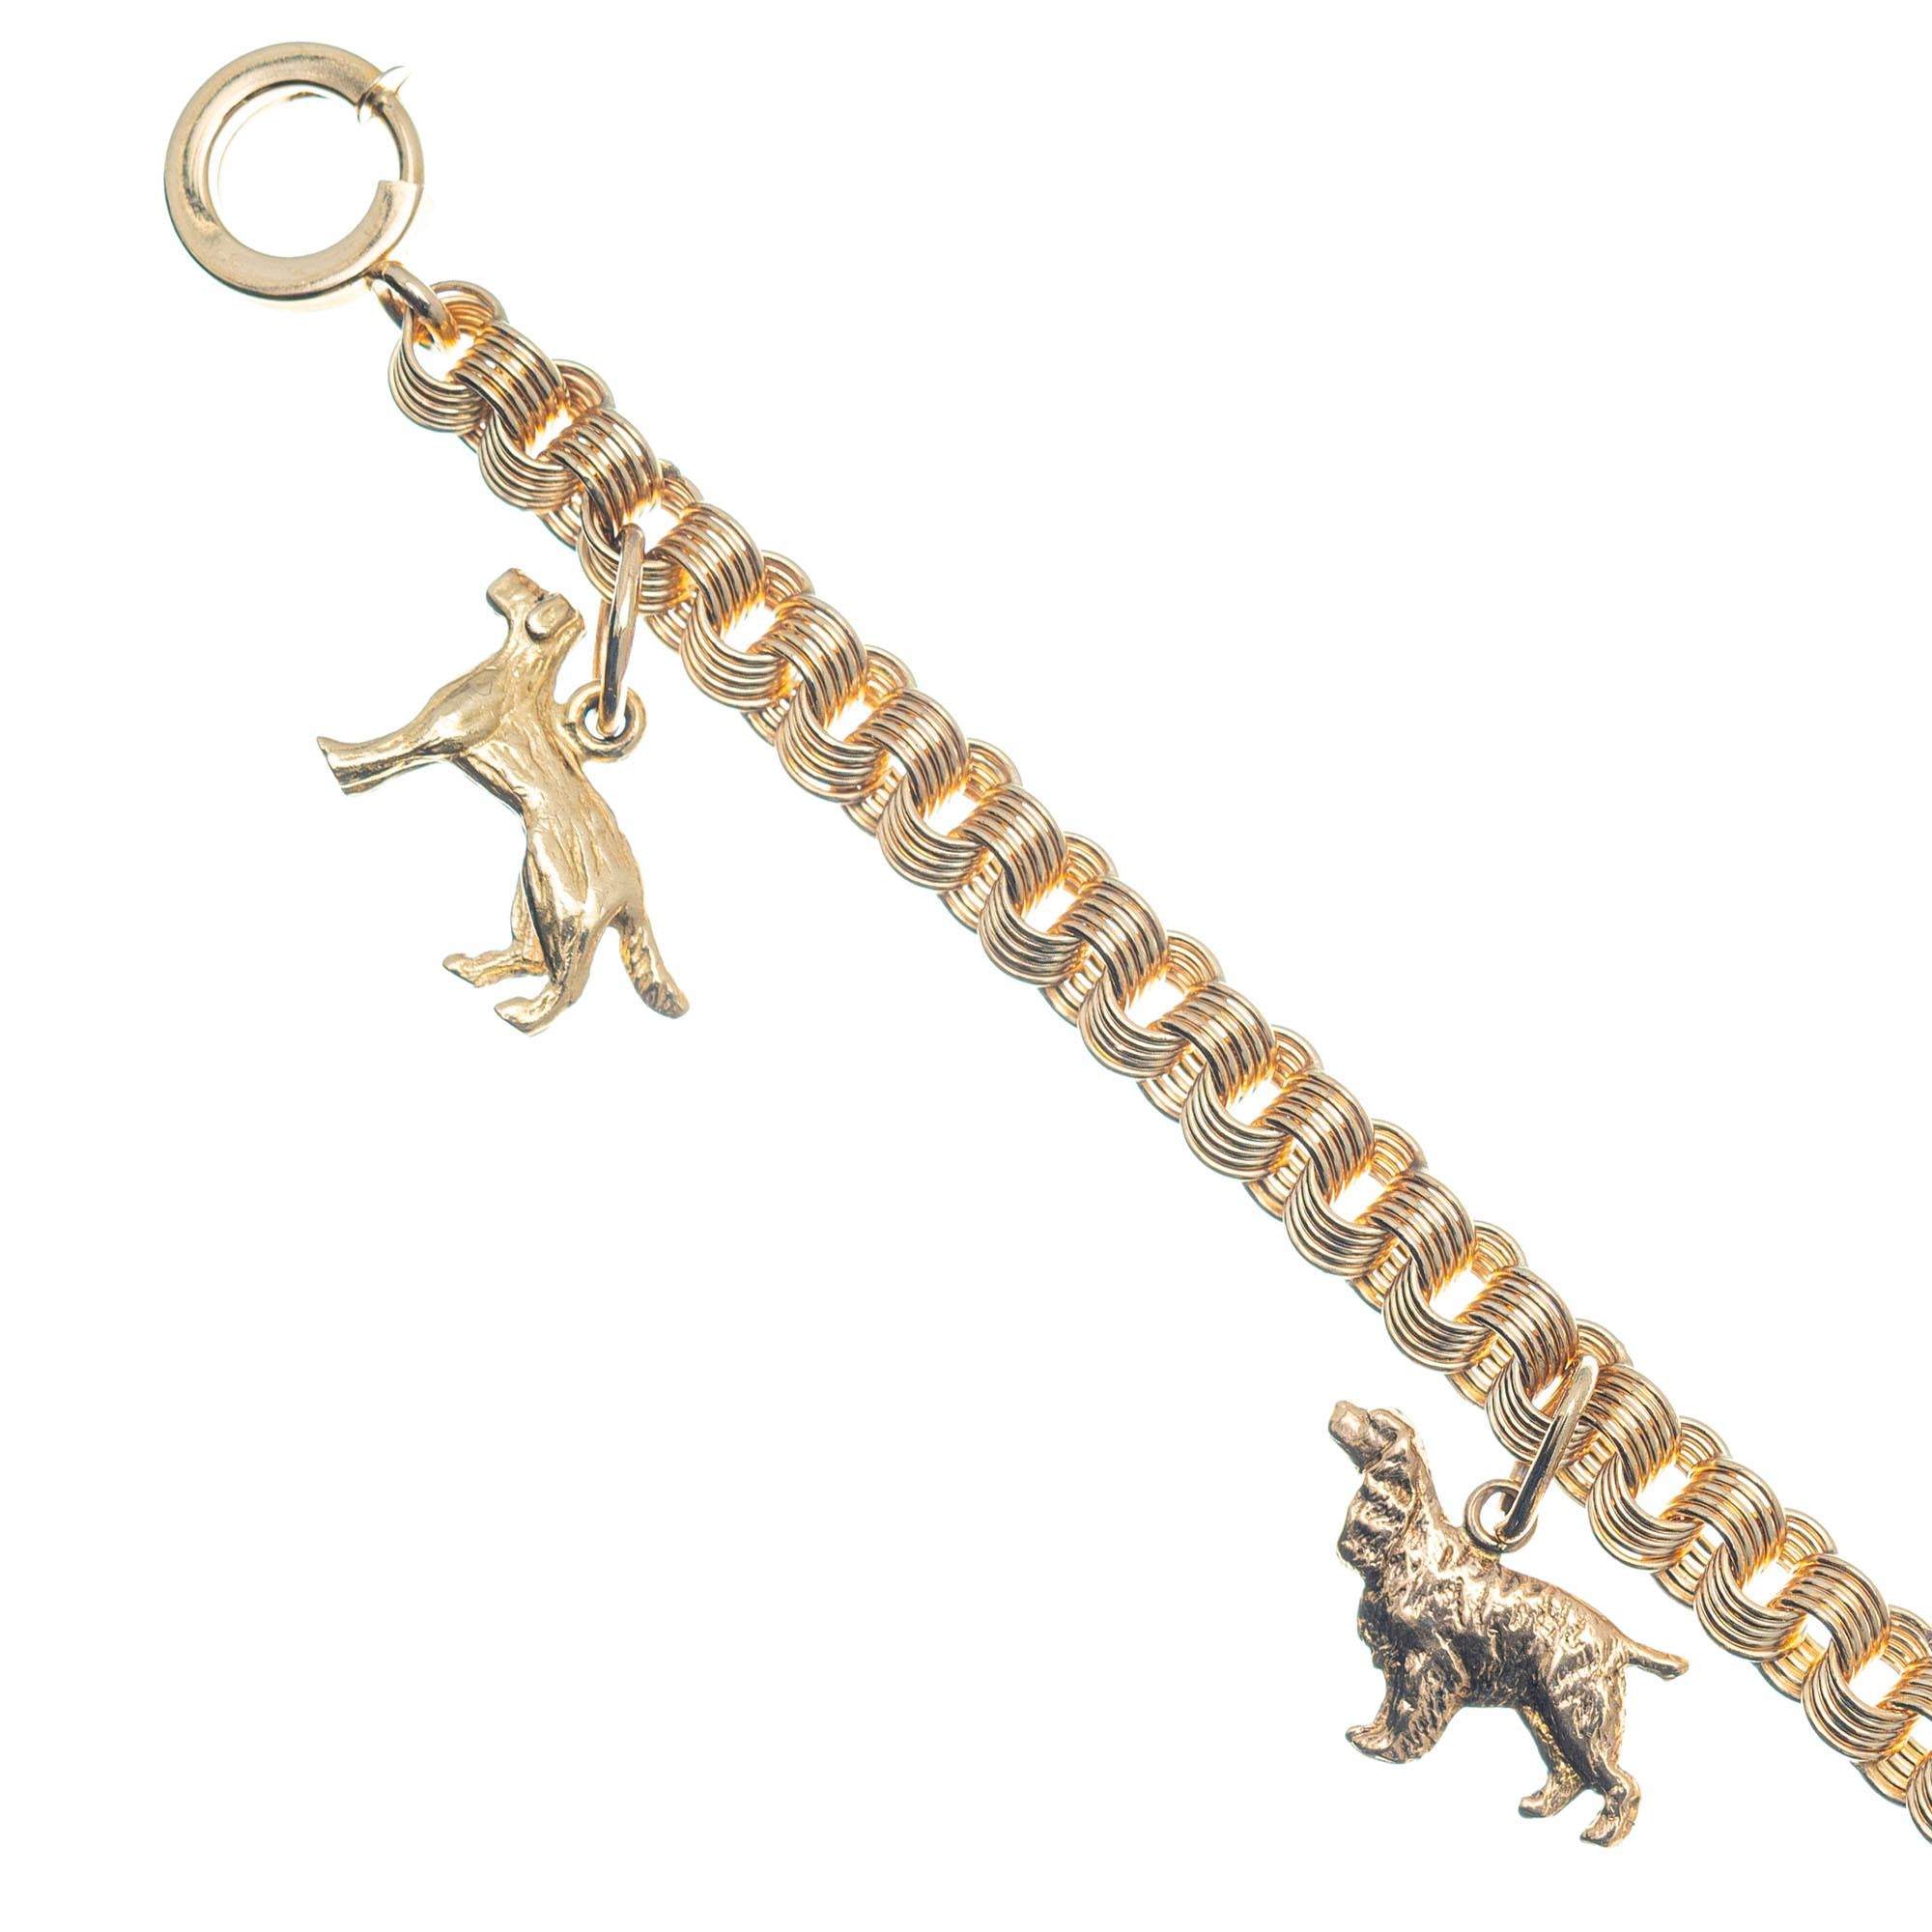 gold dog charms for bracelets